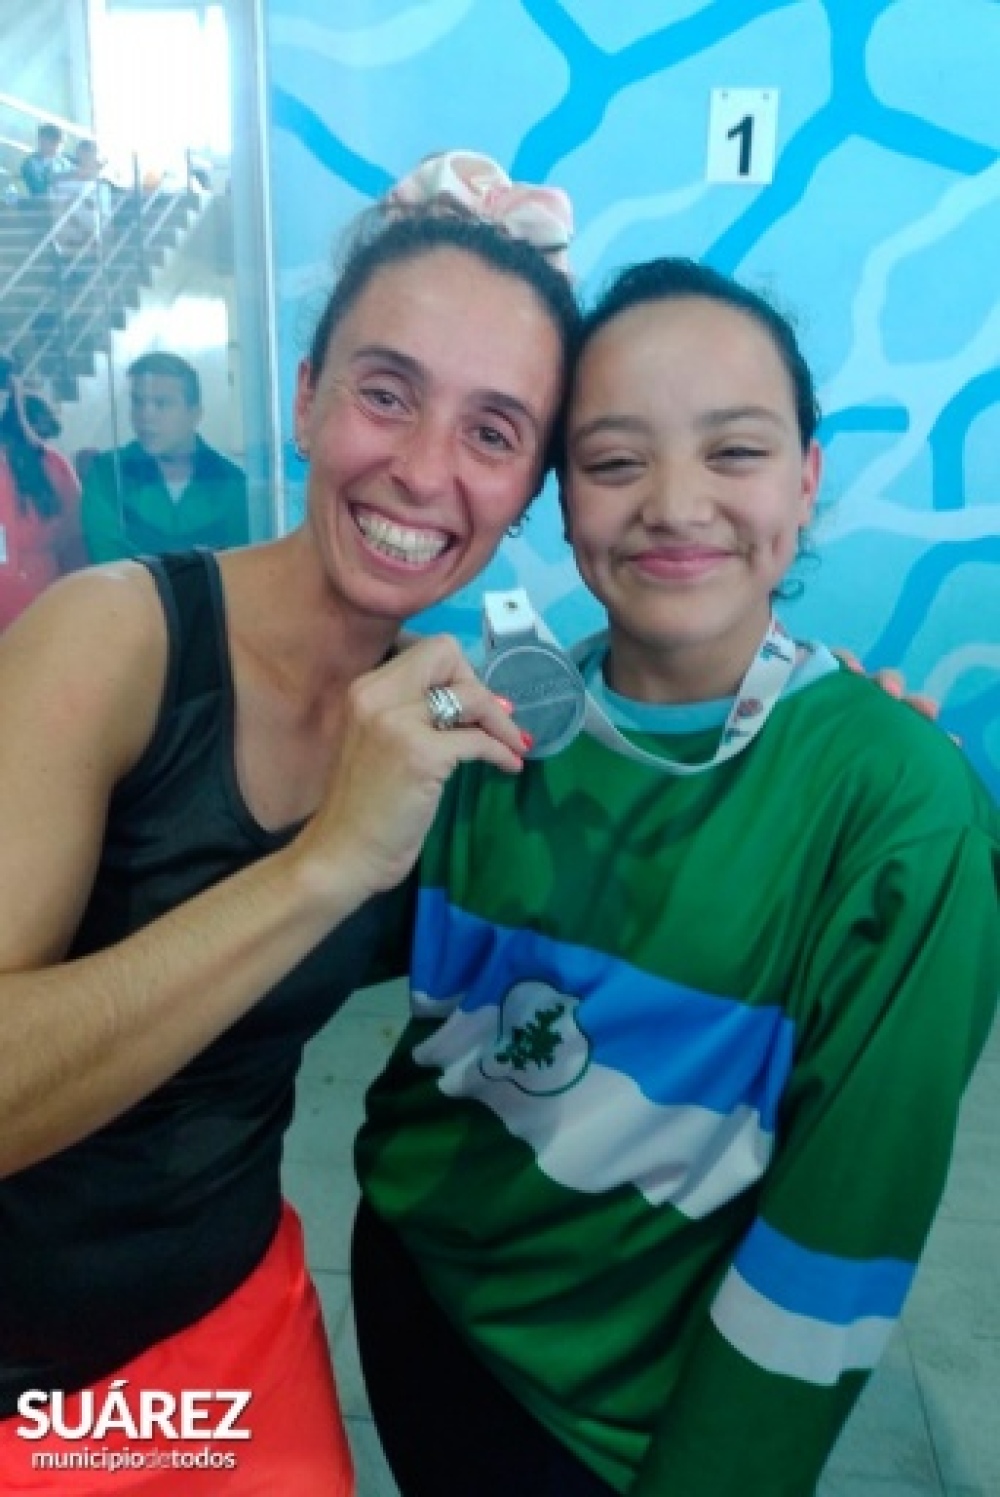 Arrancó la competencia en Mar del Plata y Suárez ya sumó una medalla: Tatiana Gómez medalla de Plata Natación Sub14 hipoacúsicos
